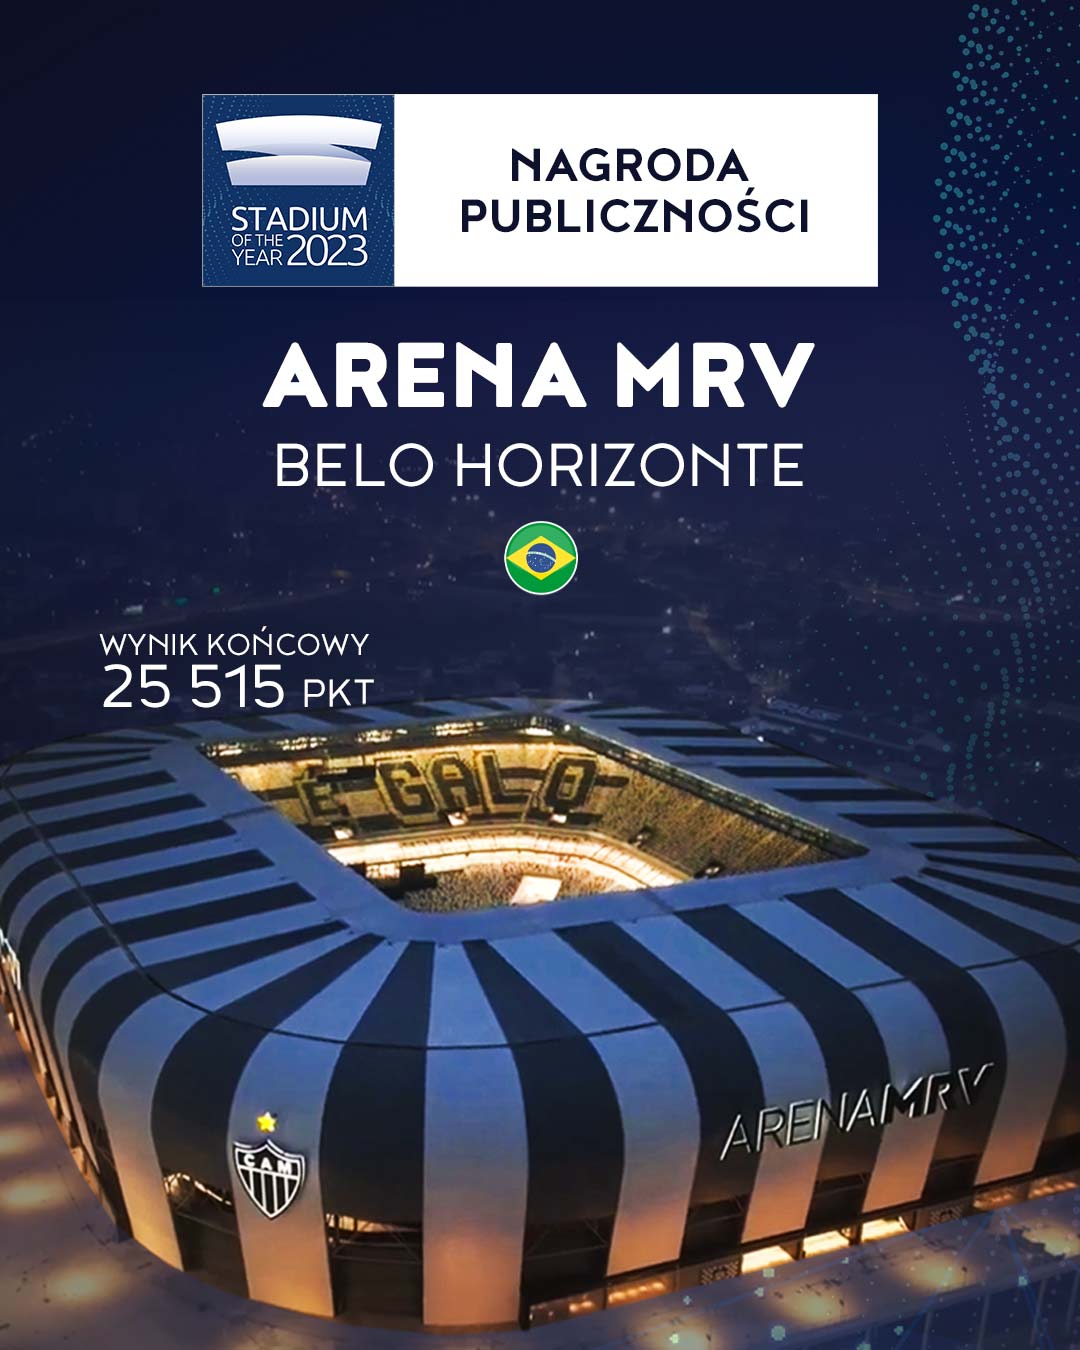 Arena MRV zwycięża Stadium of the Year 2023